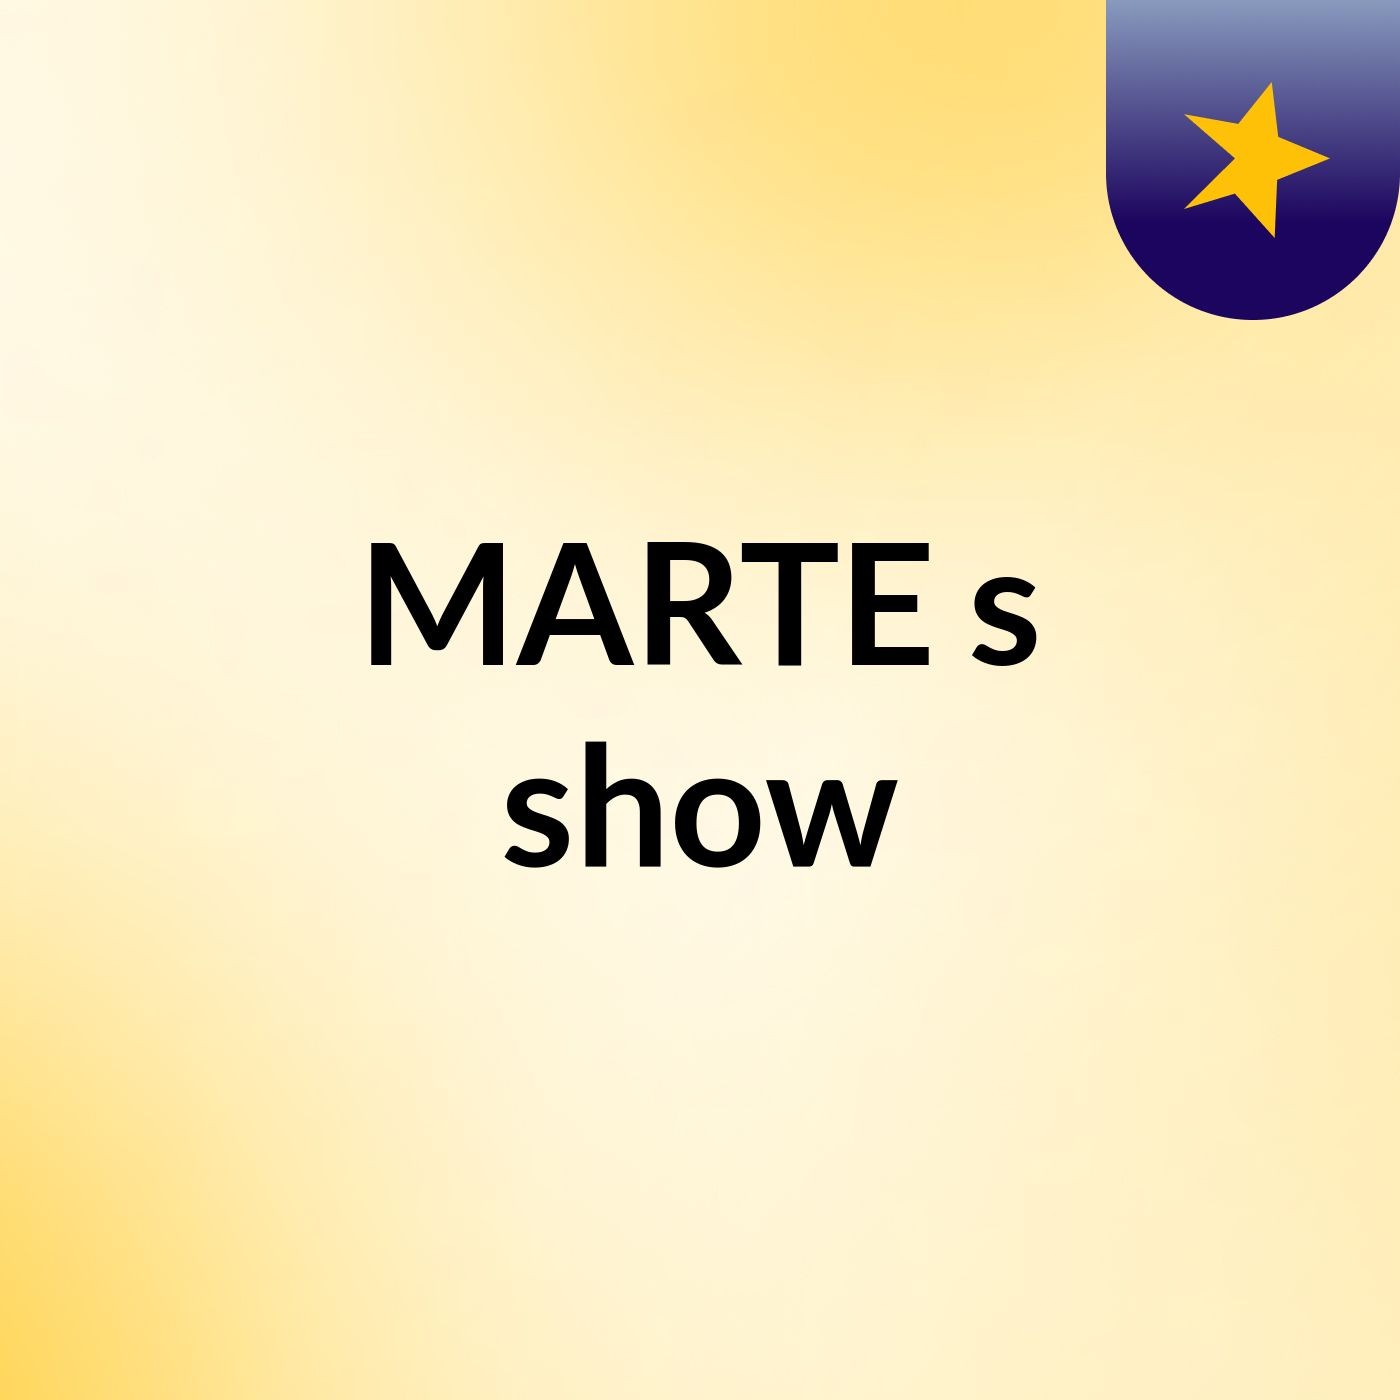 MARTE's show